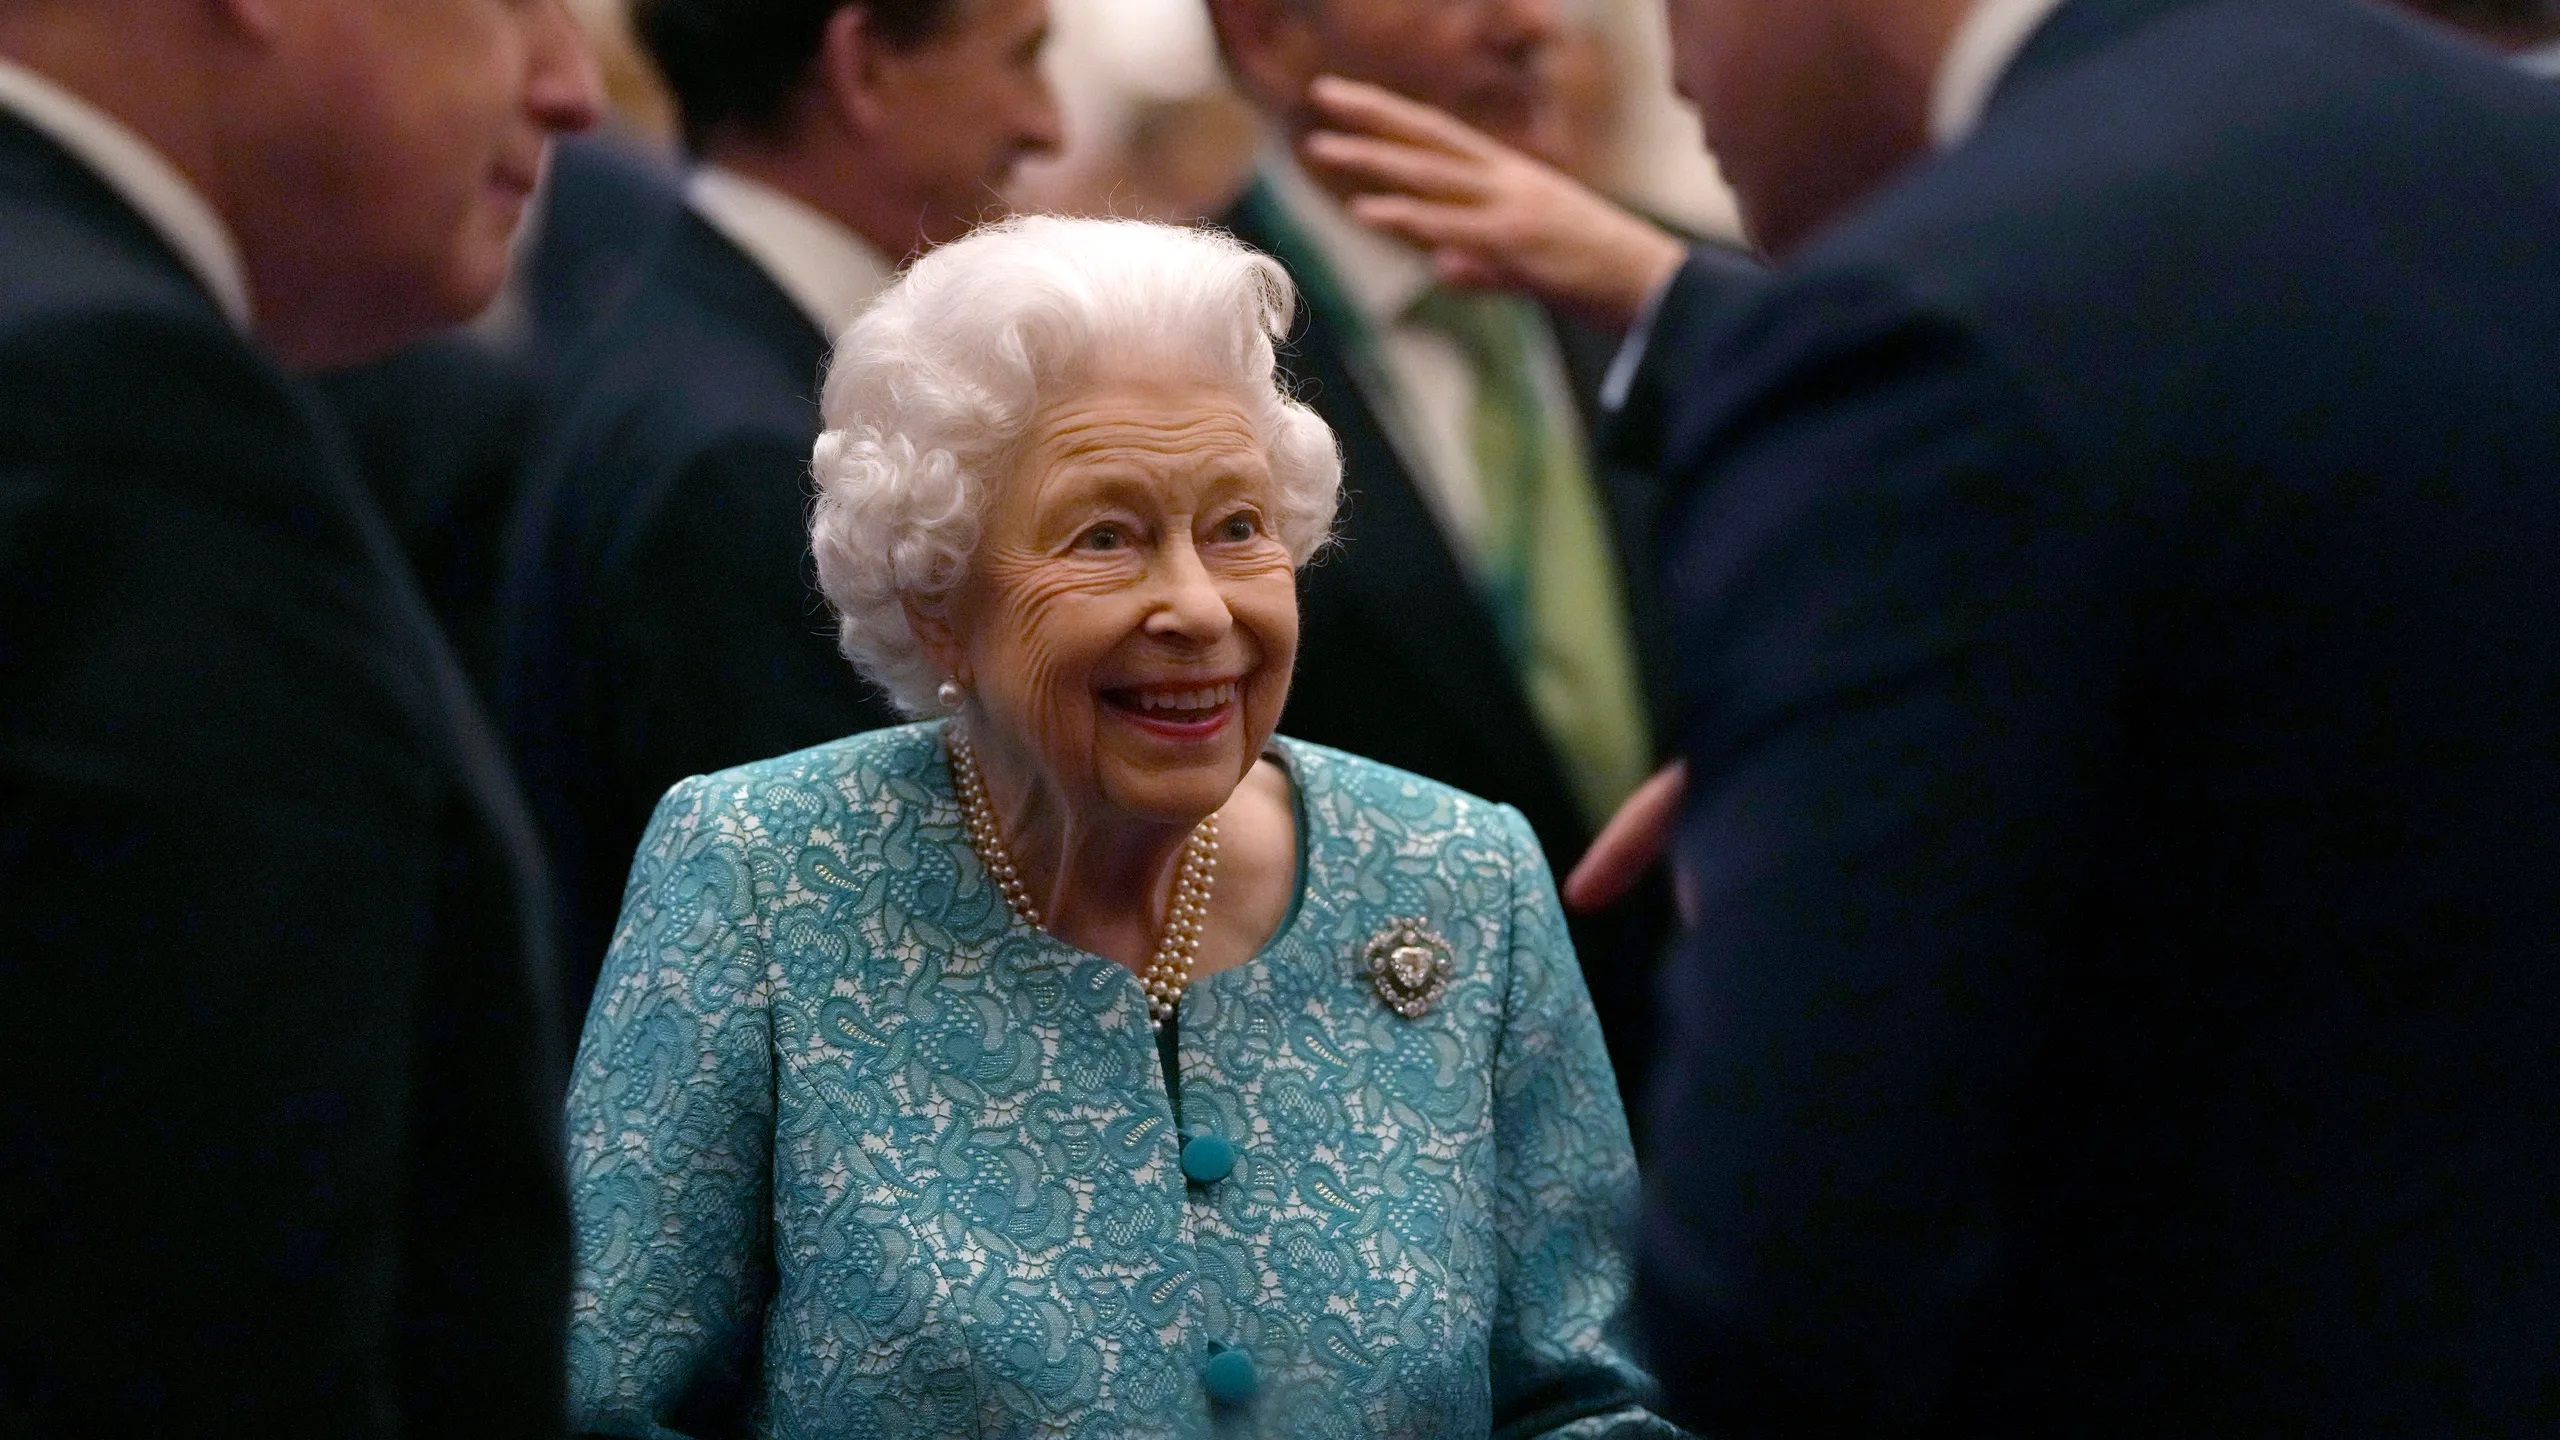 “E’ morta in pace” la regina d’Inghilterra Elisabetta II, il principe Carlo diventa automaticamente Re